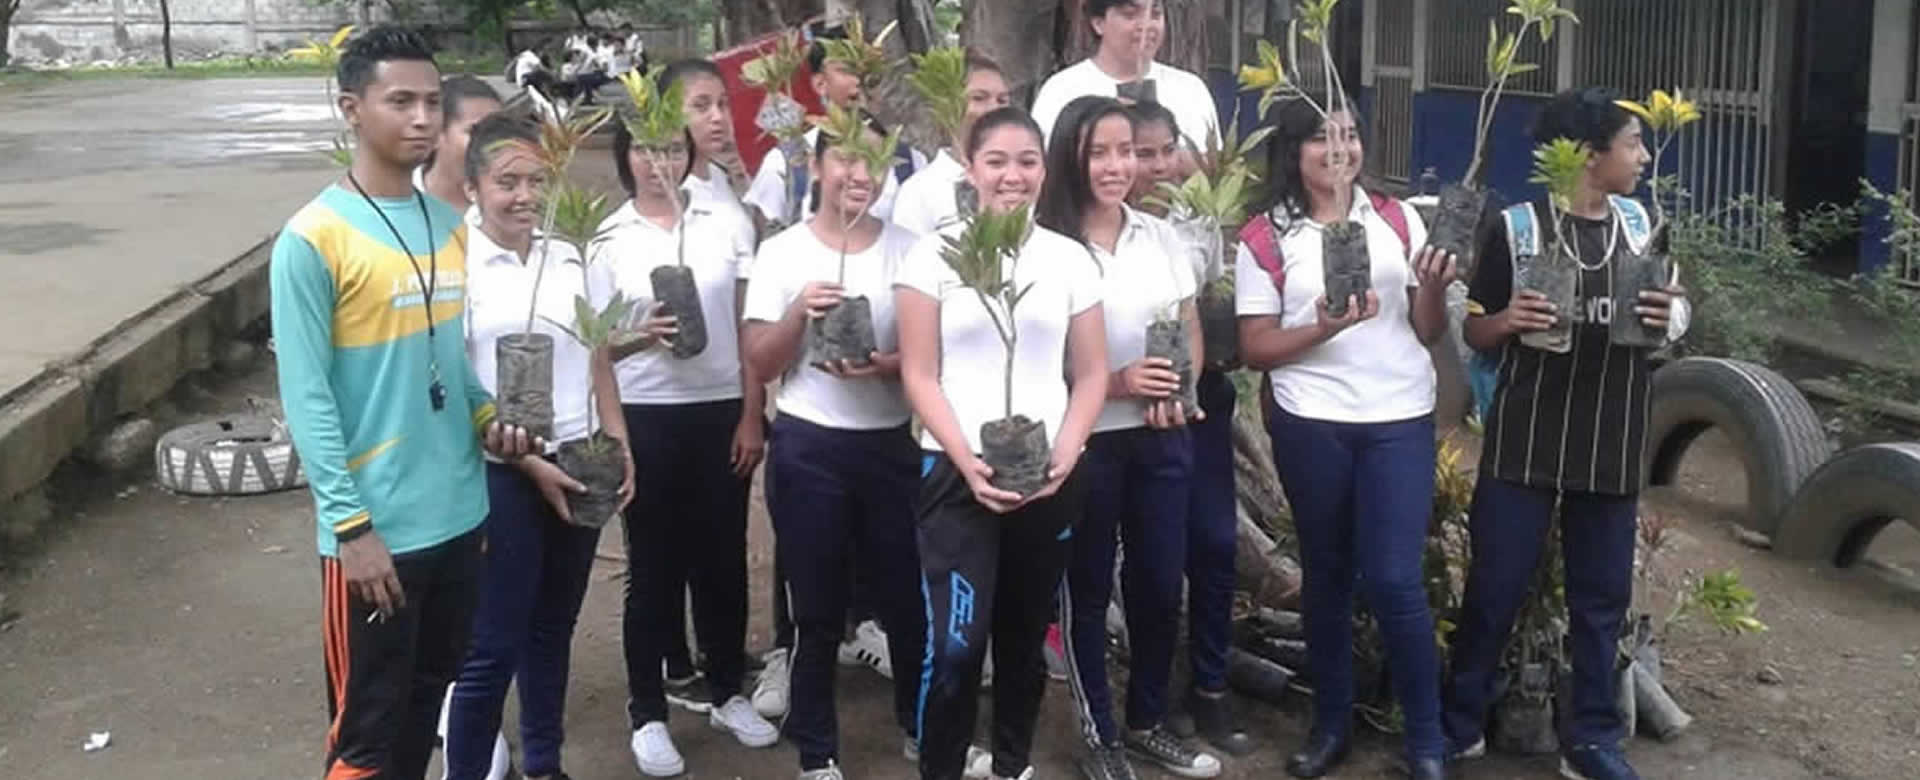 Estudiantes del Colegio Fernando Gordillo realizan jornada de reforestación